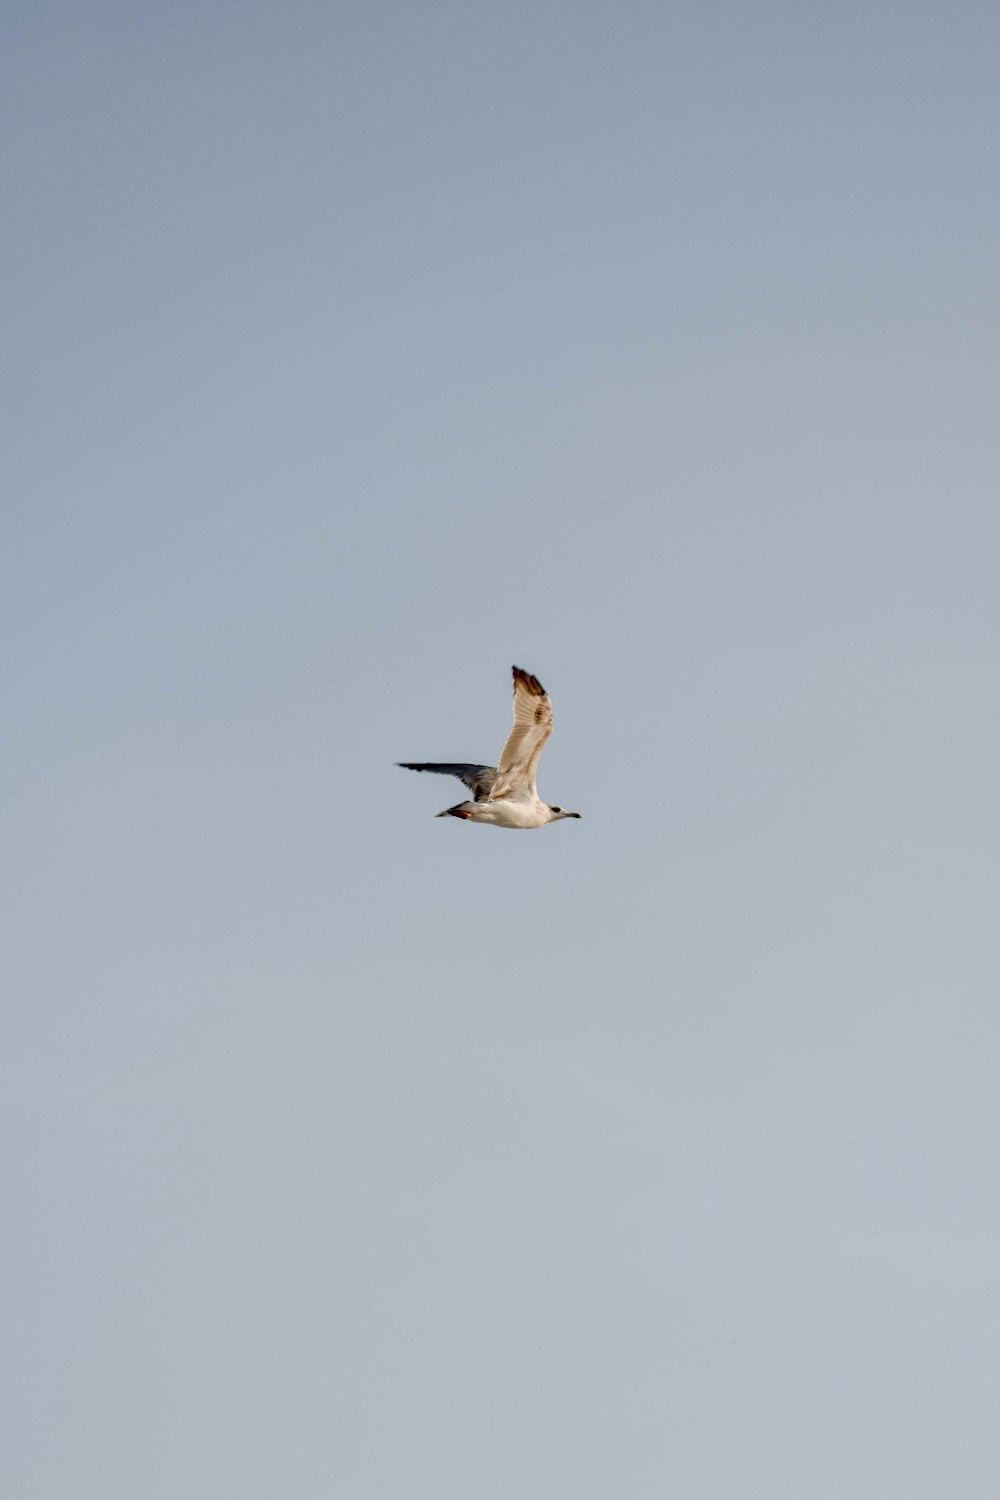 white and black bird flying under white sky during daytime